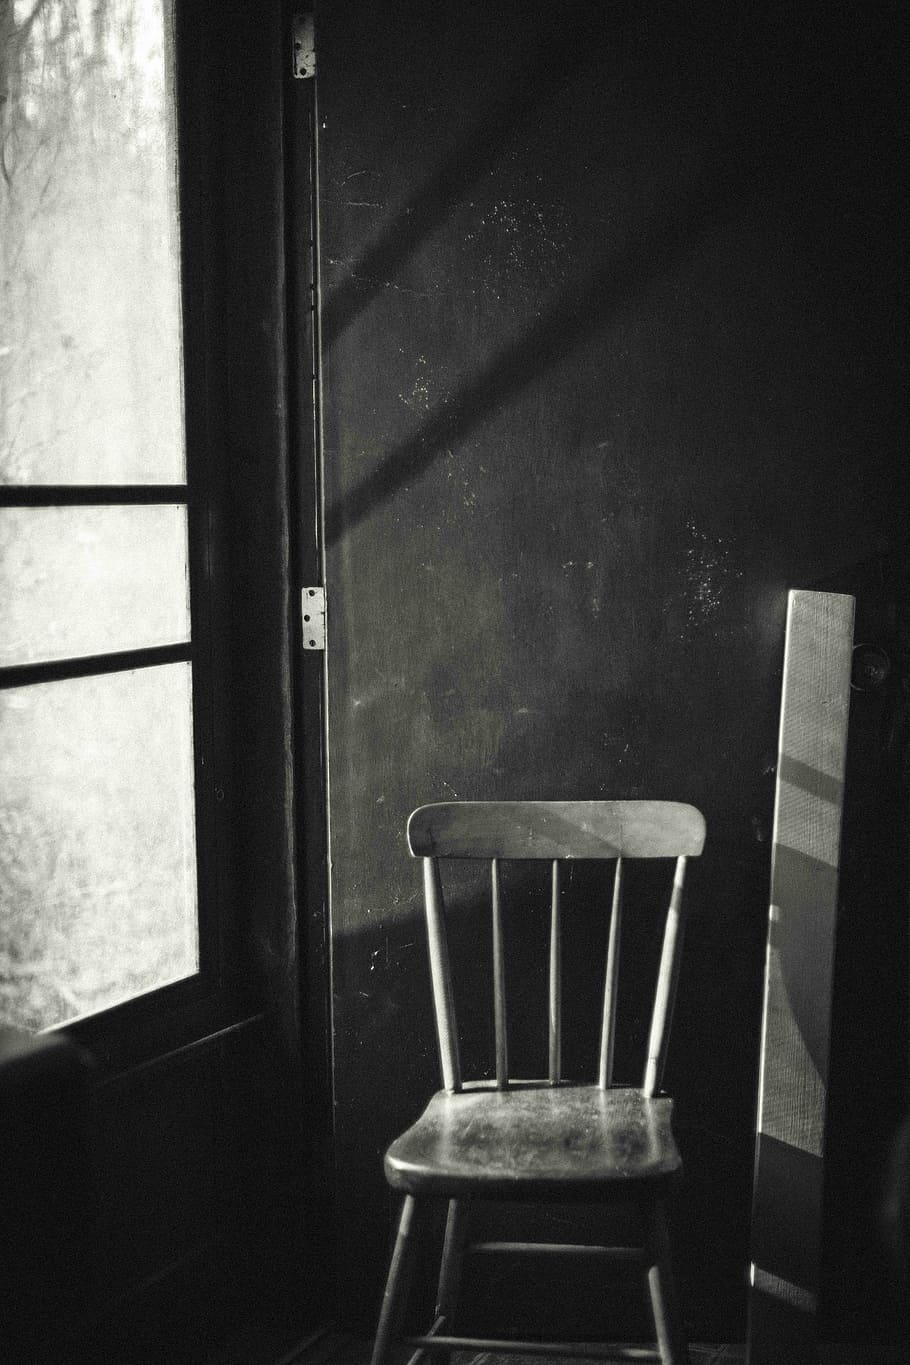 windsor chair, leaning, door, gray, scale, chair, room, dark, indoors, window